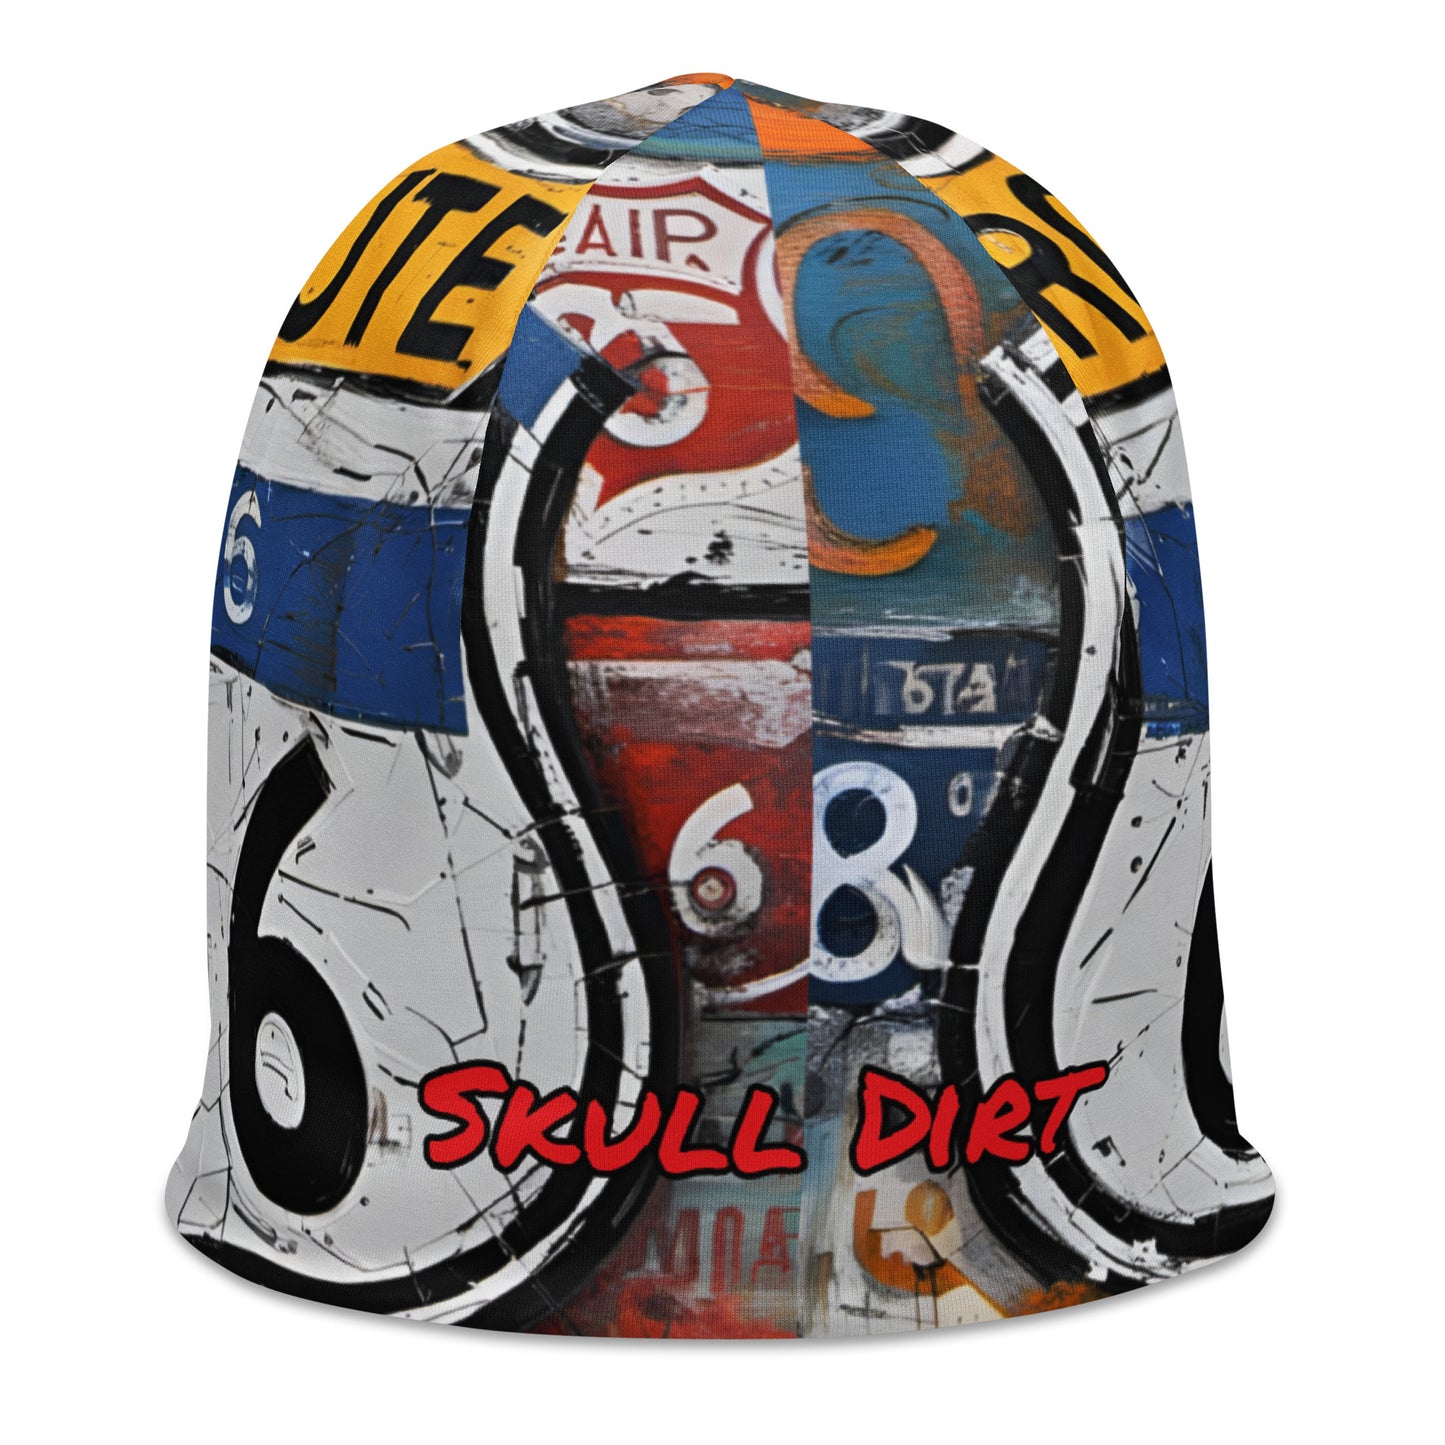 "Skull Dirt" All-Over Print Beanie HatS